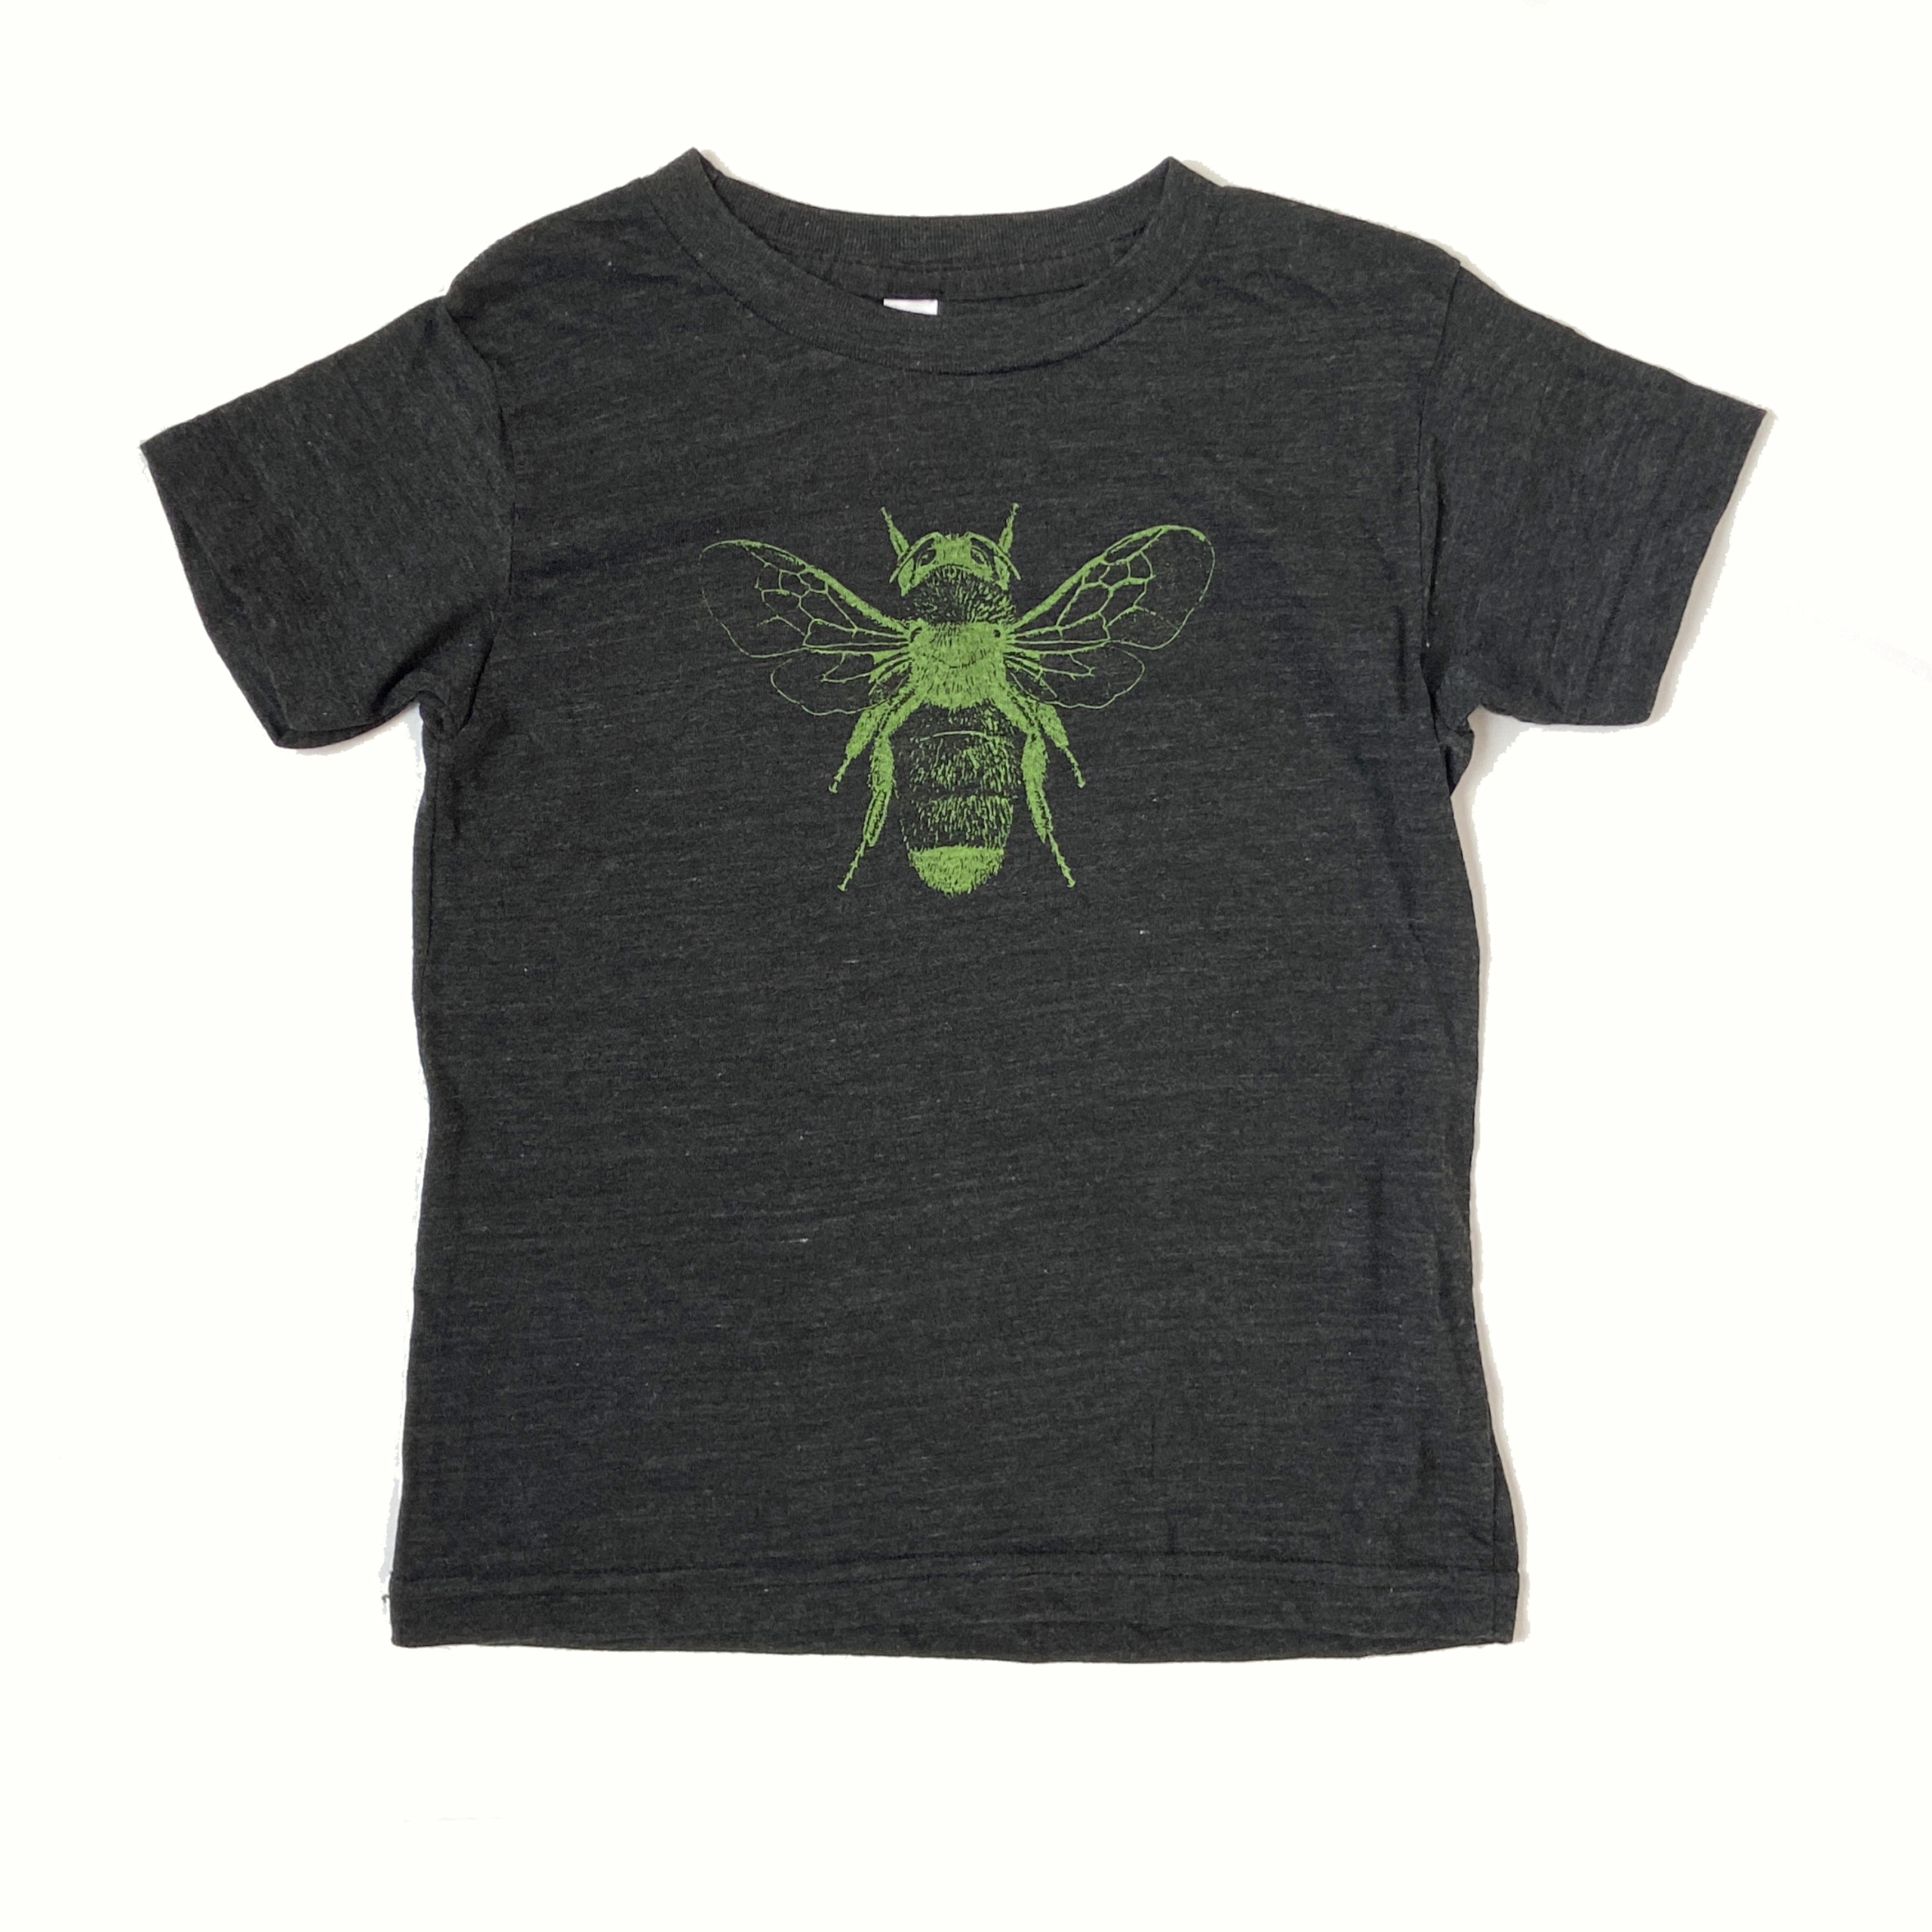 Honey Bee T-shirt - The Co-op School